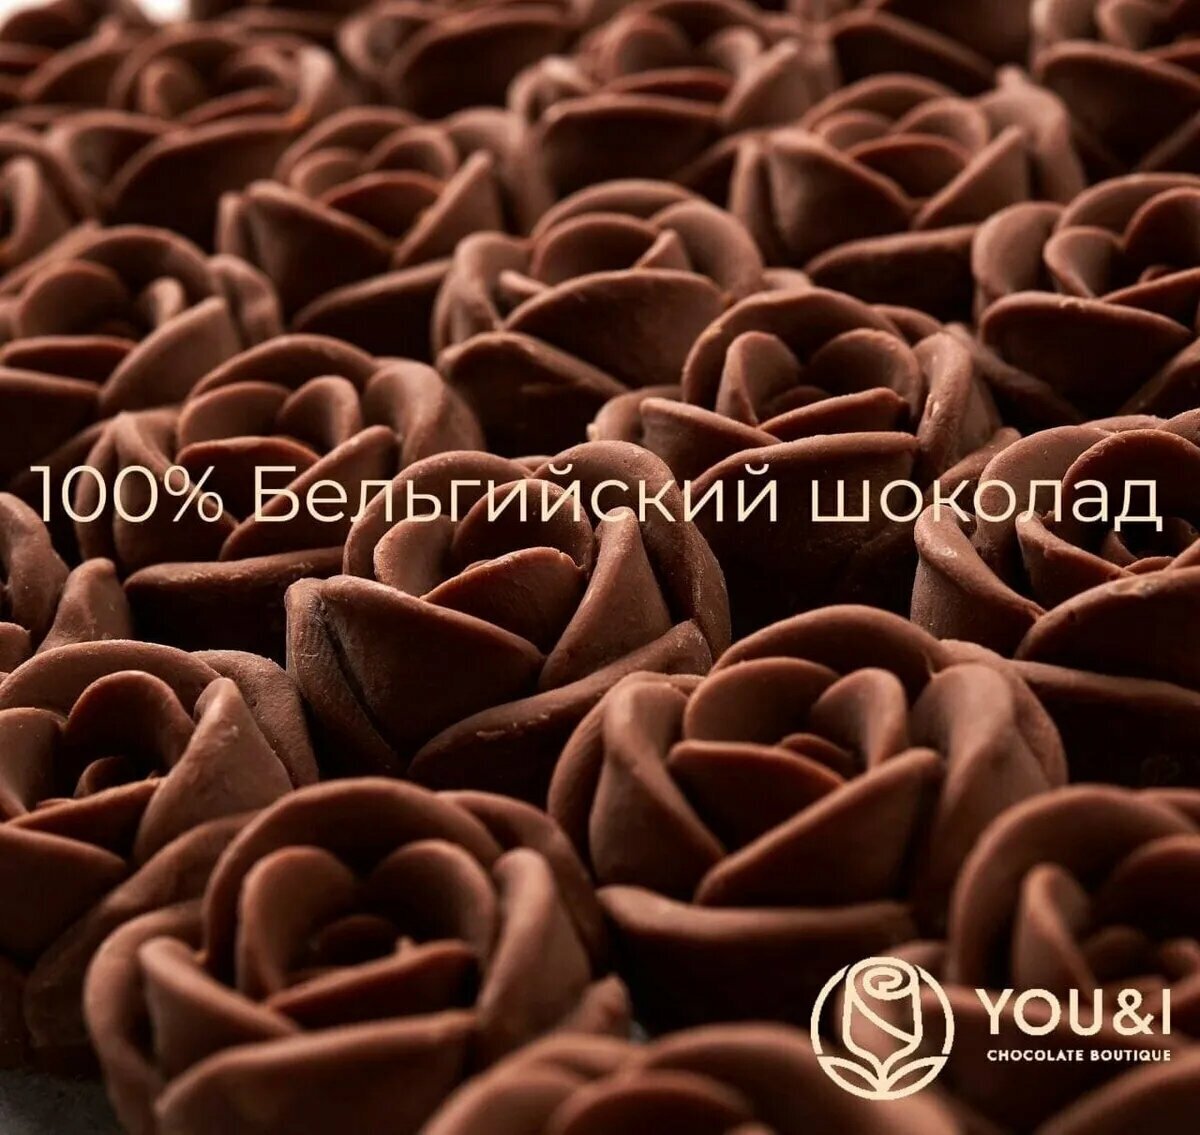 37 шоколадных роз в букете You&I бельгийский шоколад / конфеты в подарок девушке